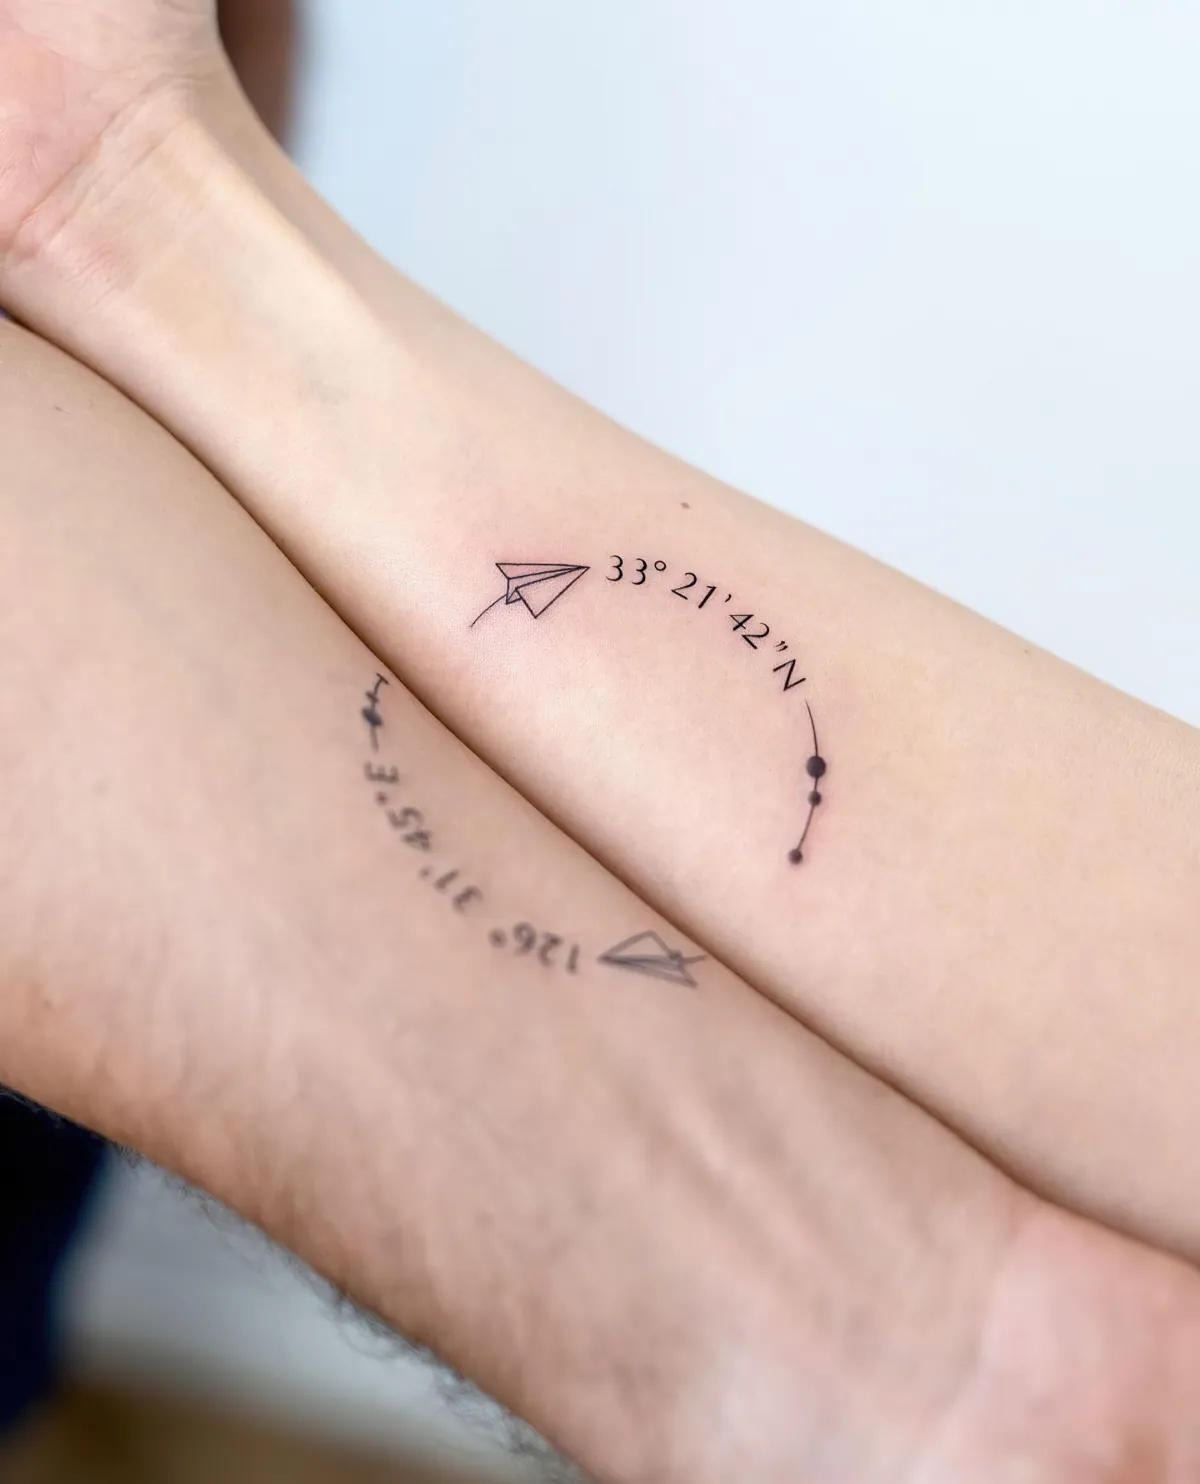 koordinate tattoos sich ergänzend am unterarm